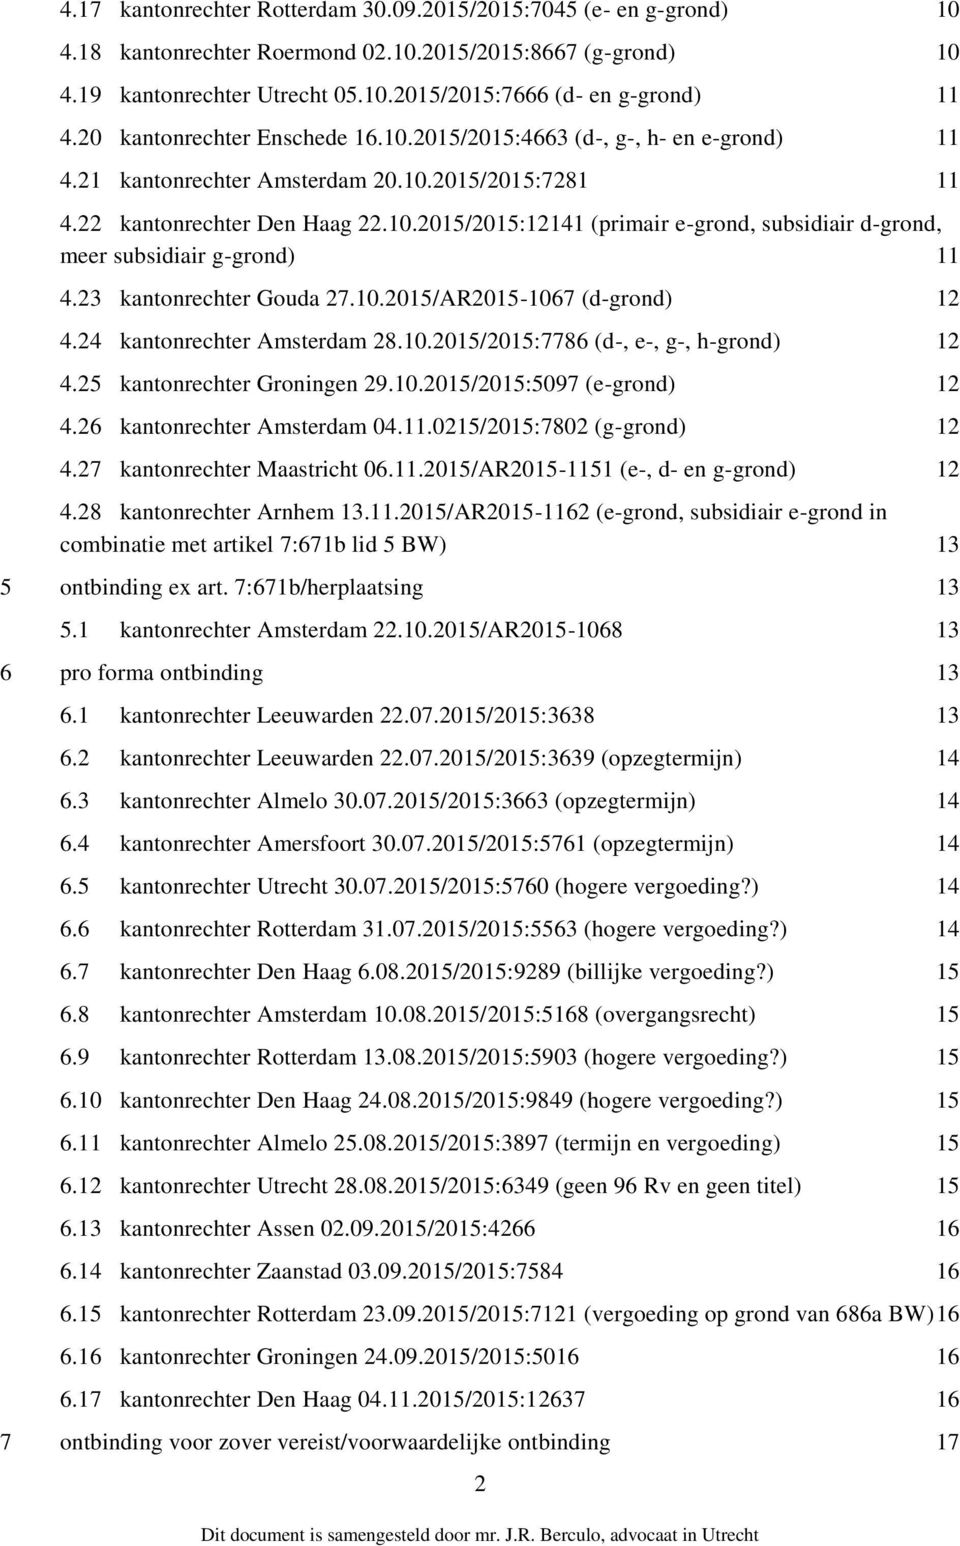 23 kantonrechter Gouda 27.10.2015/AR2015-1067 (d-grond) 12 4.24 kantonrechter Amsterdam 28.10.2015/2015:7786 (d-, e-, g-, h-grond) 12 4.25 kantonrechter Groningen 29.10.2015/2015:5097 (e-grond) 12 4.